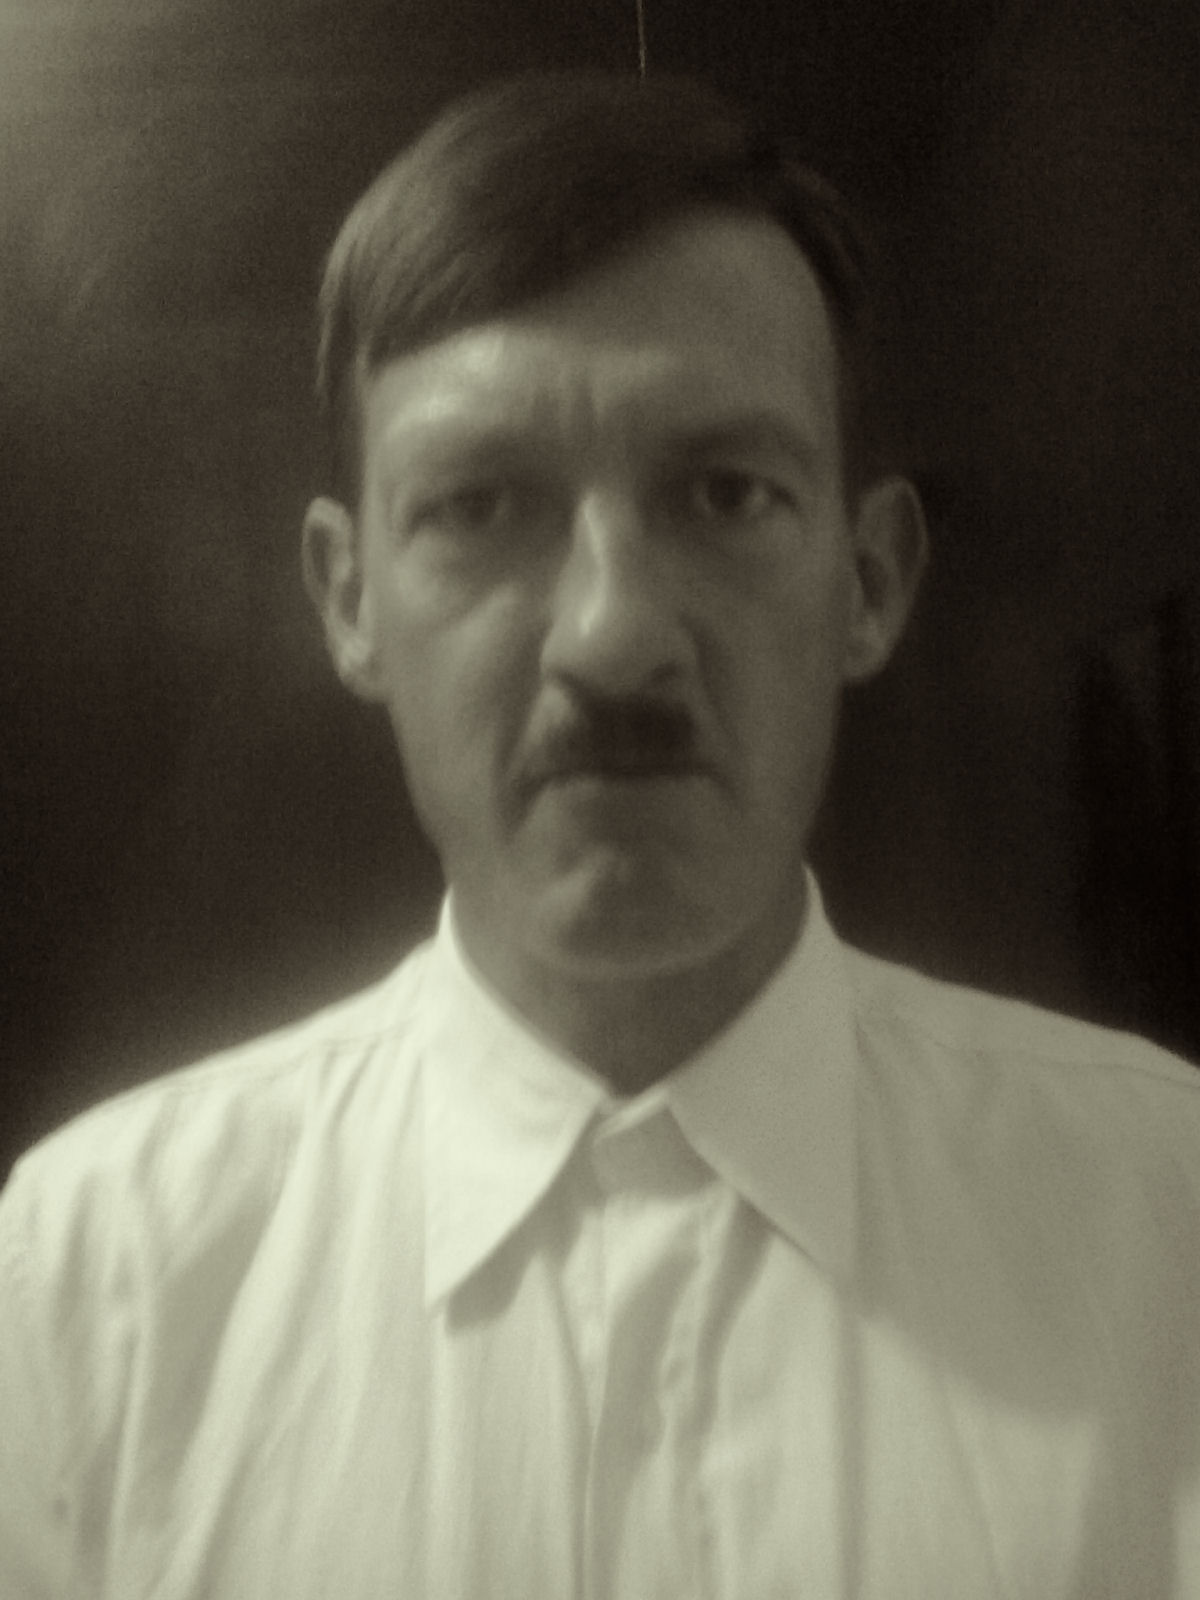 Se fosse descendente direto de Hitler, você teria filhos?: a pergunta da semana